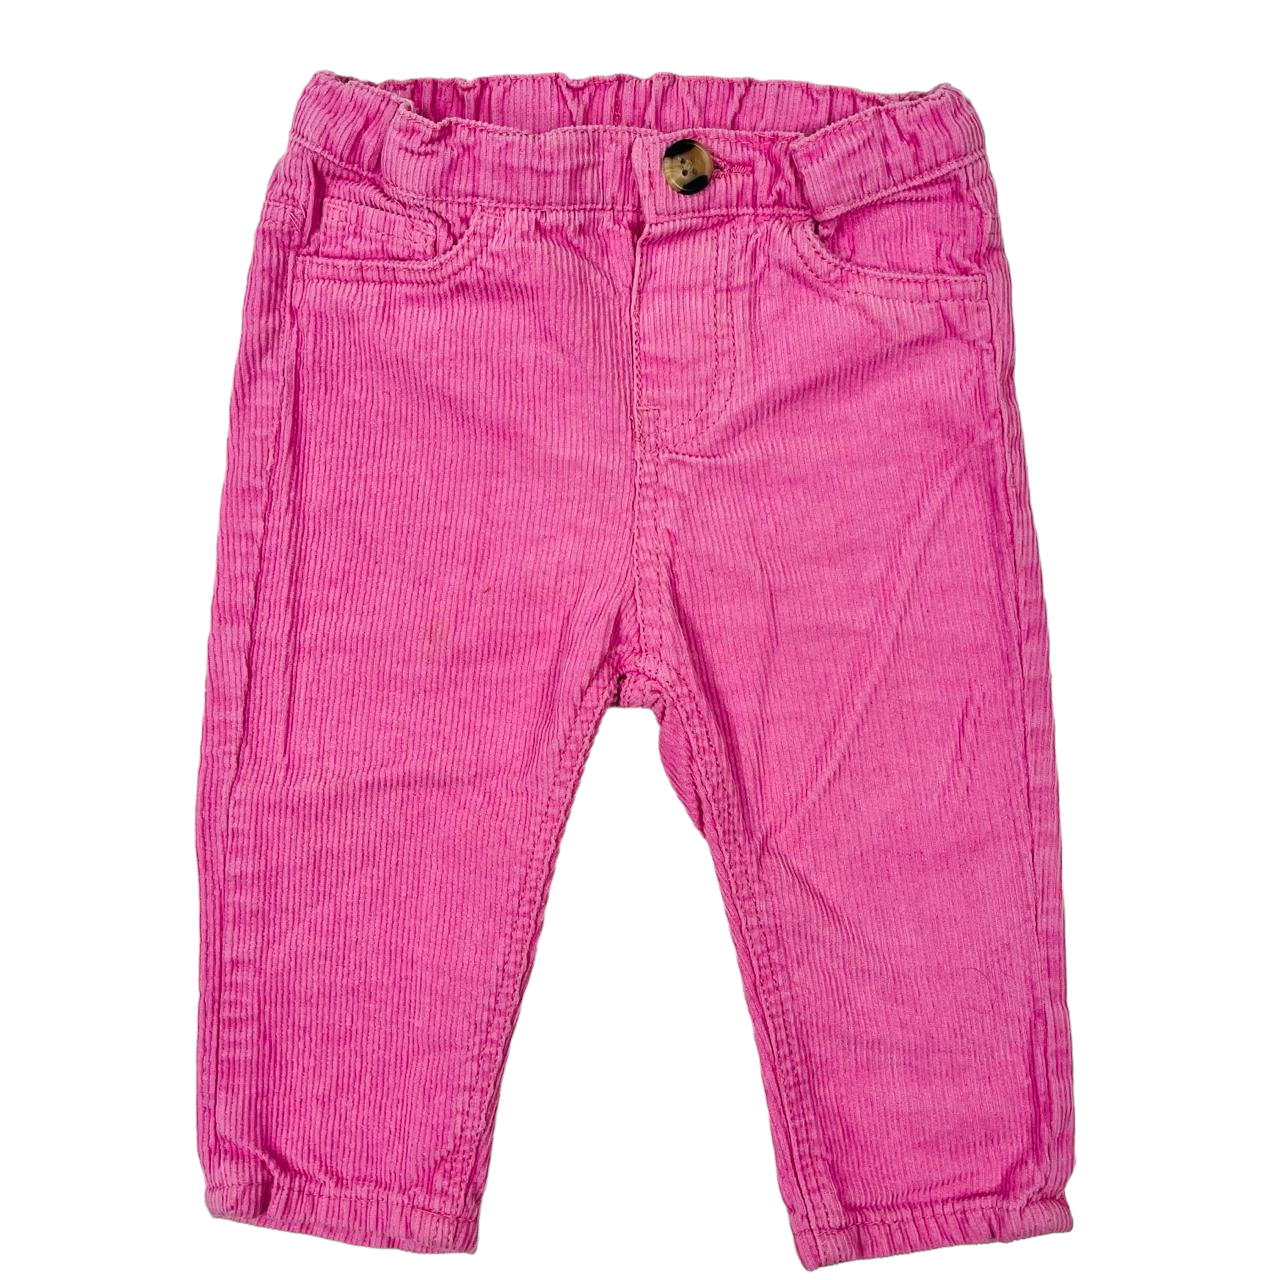 Pantalon cotele rosado con pretina bolsillo y boton cafe